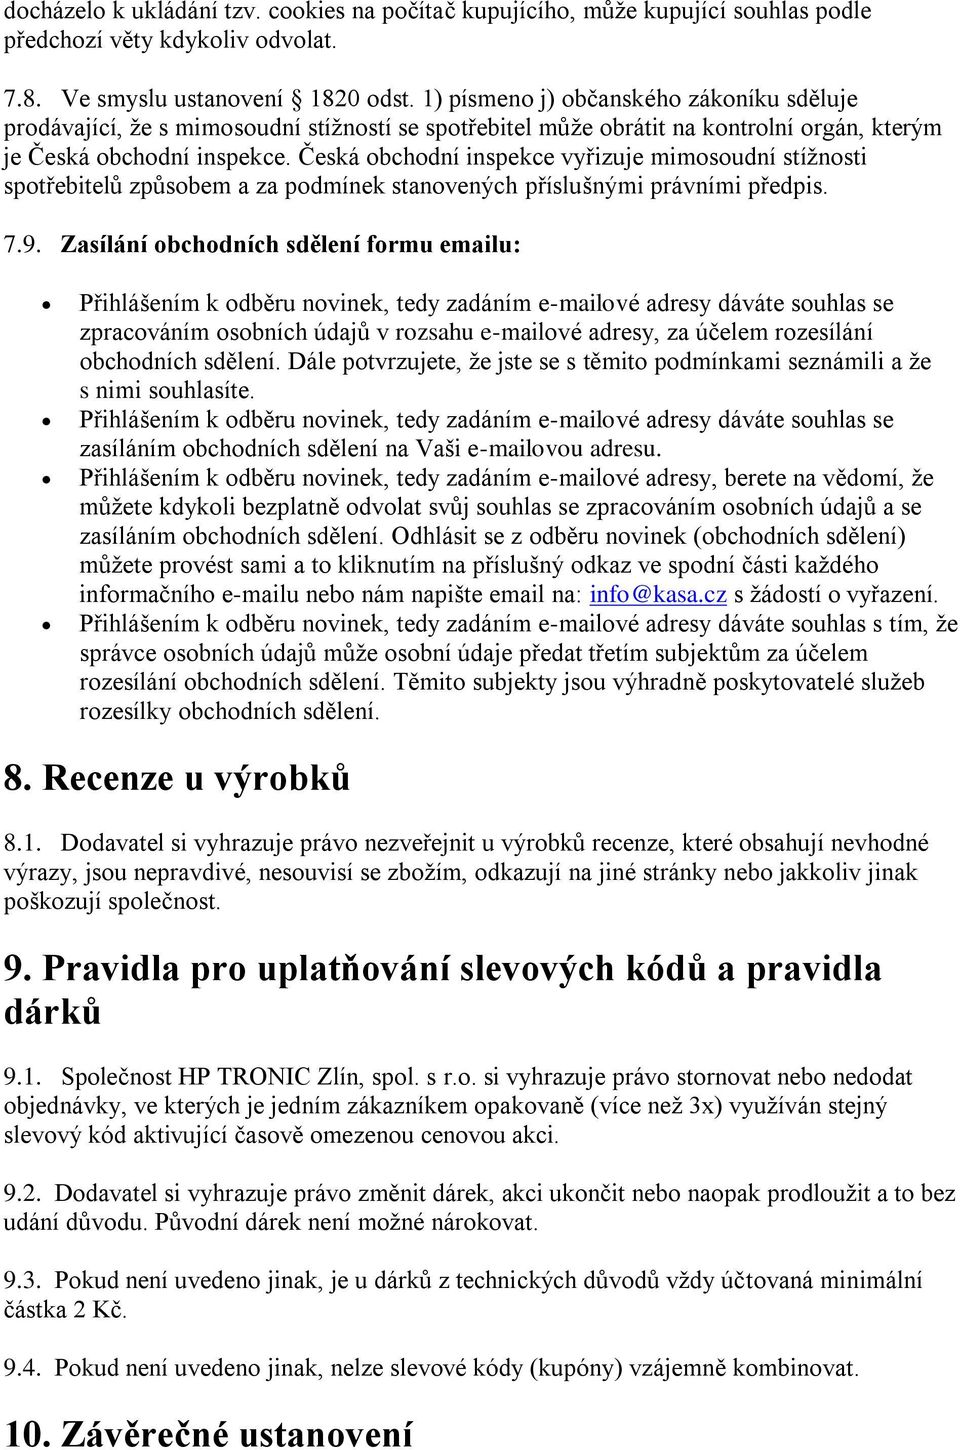 Česká obchodní inspekce vyřizuje mimosoudní stížnosti spotřebitelů způsobem a za podmínek stanovených příslušnými právními předpis. 7.9.